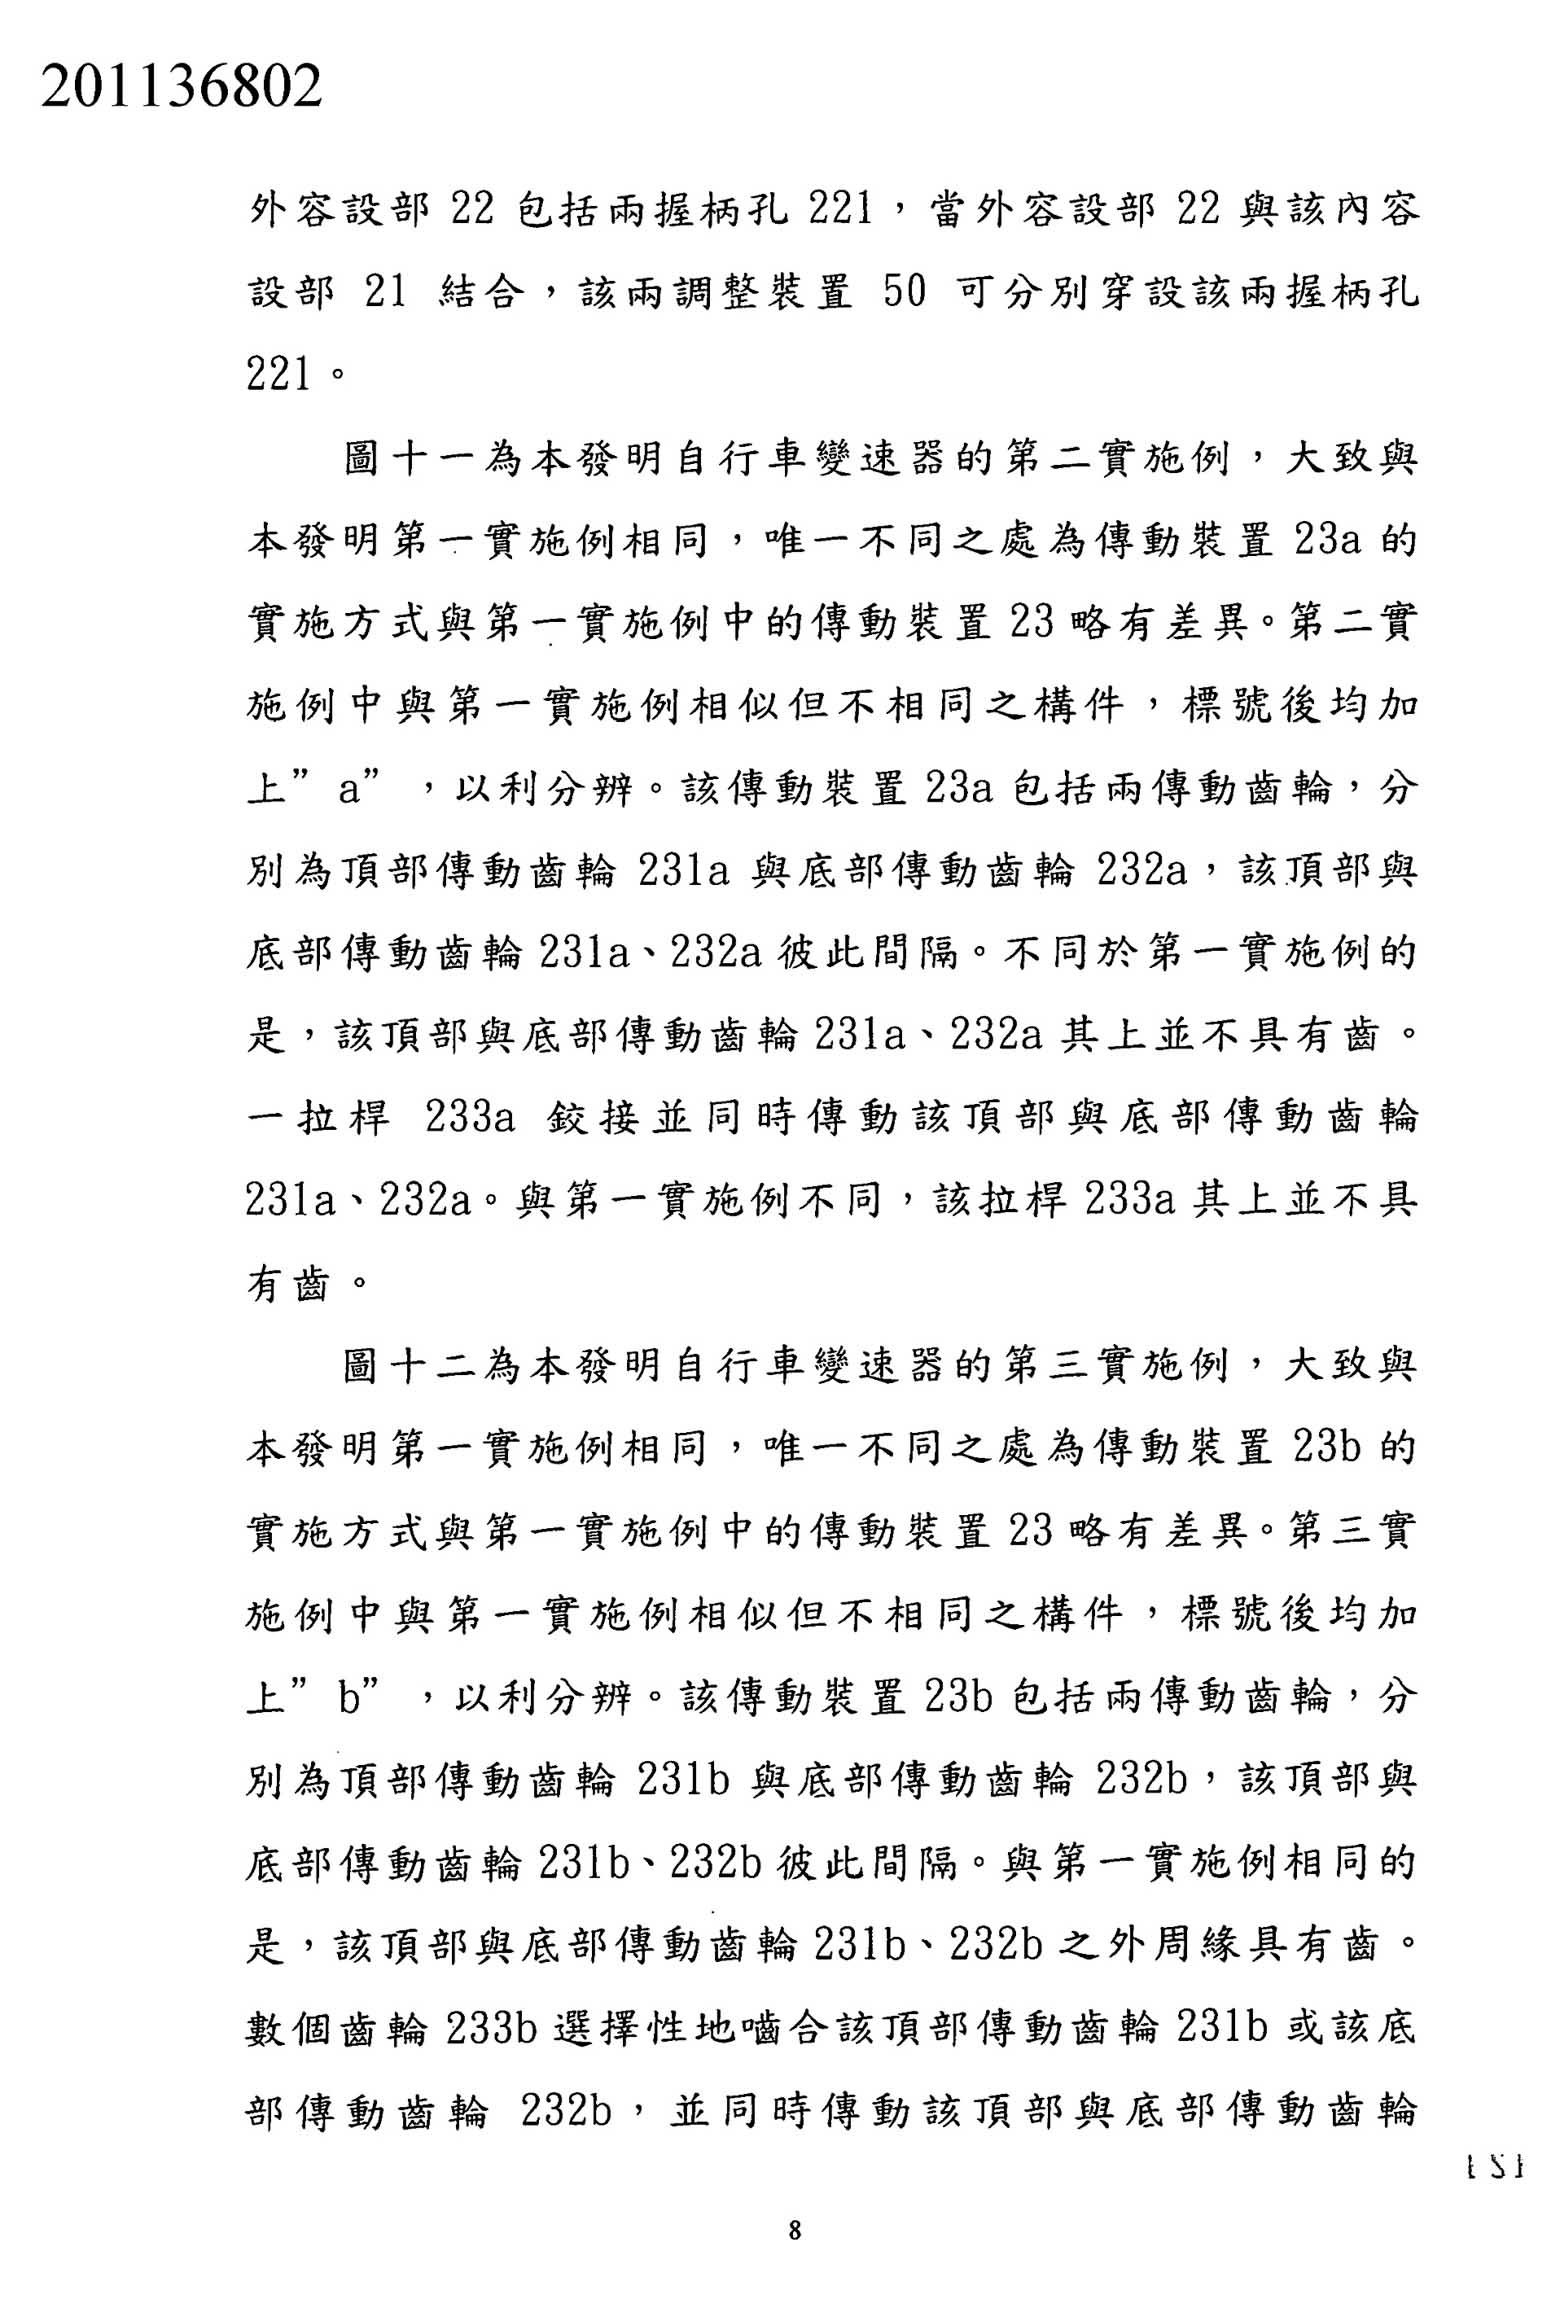 Taiwanese patent 201136802 - FSA scan 7 main image